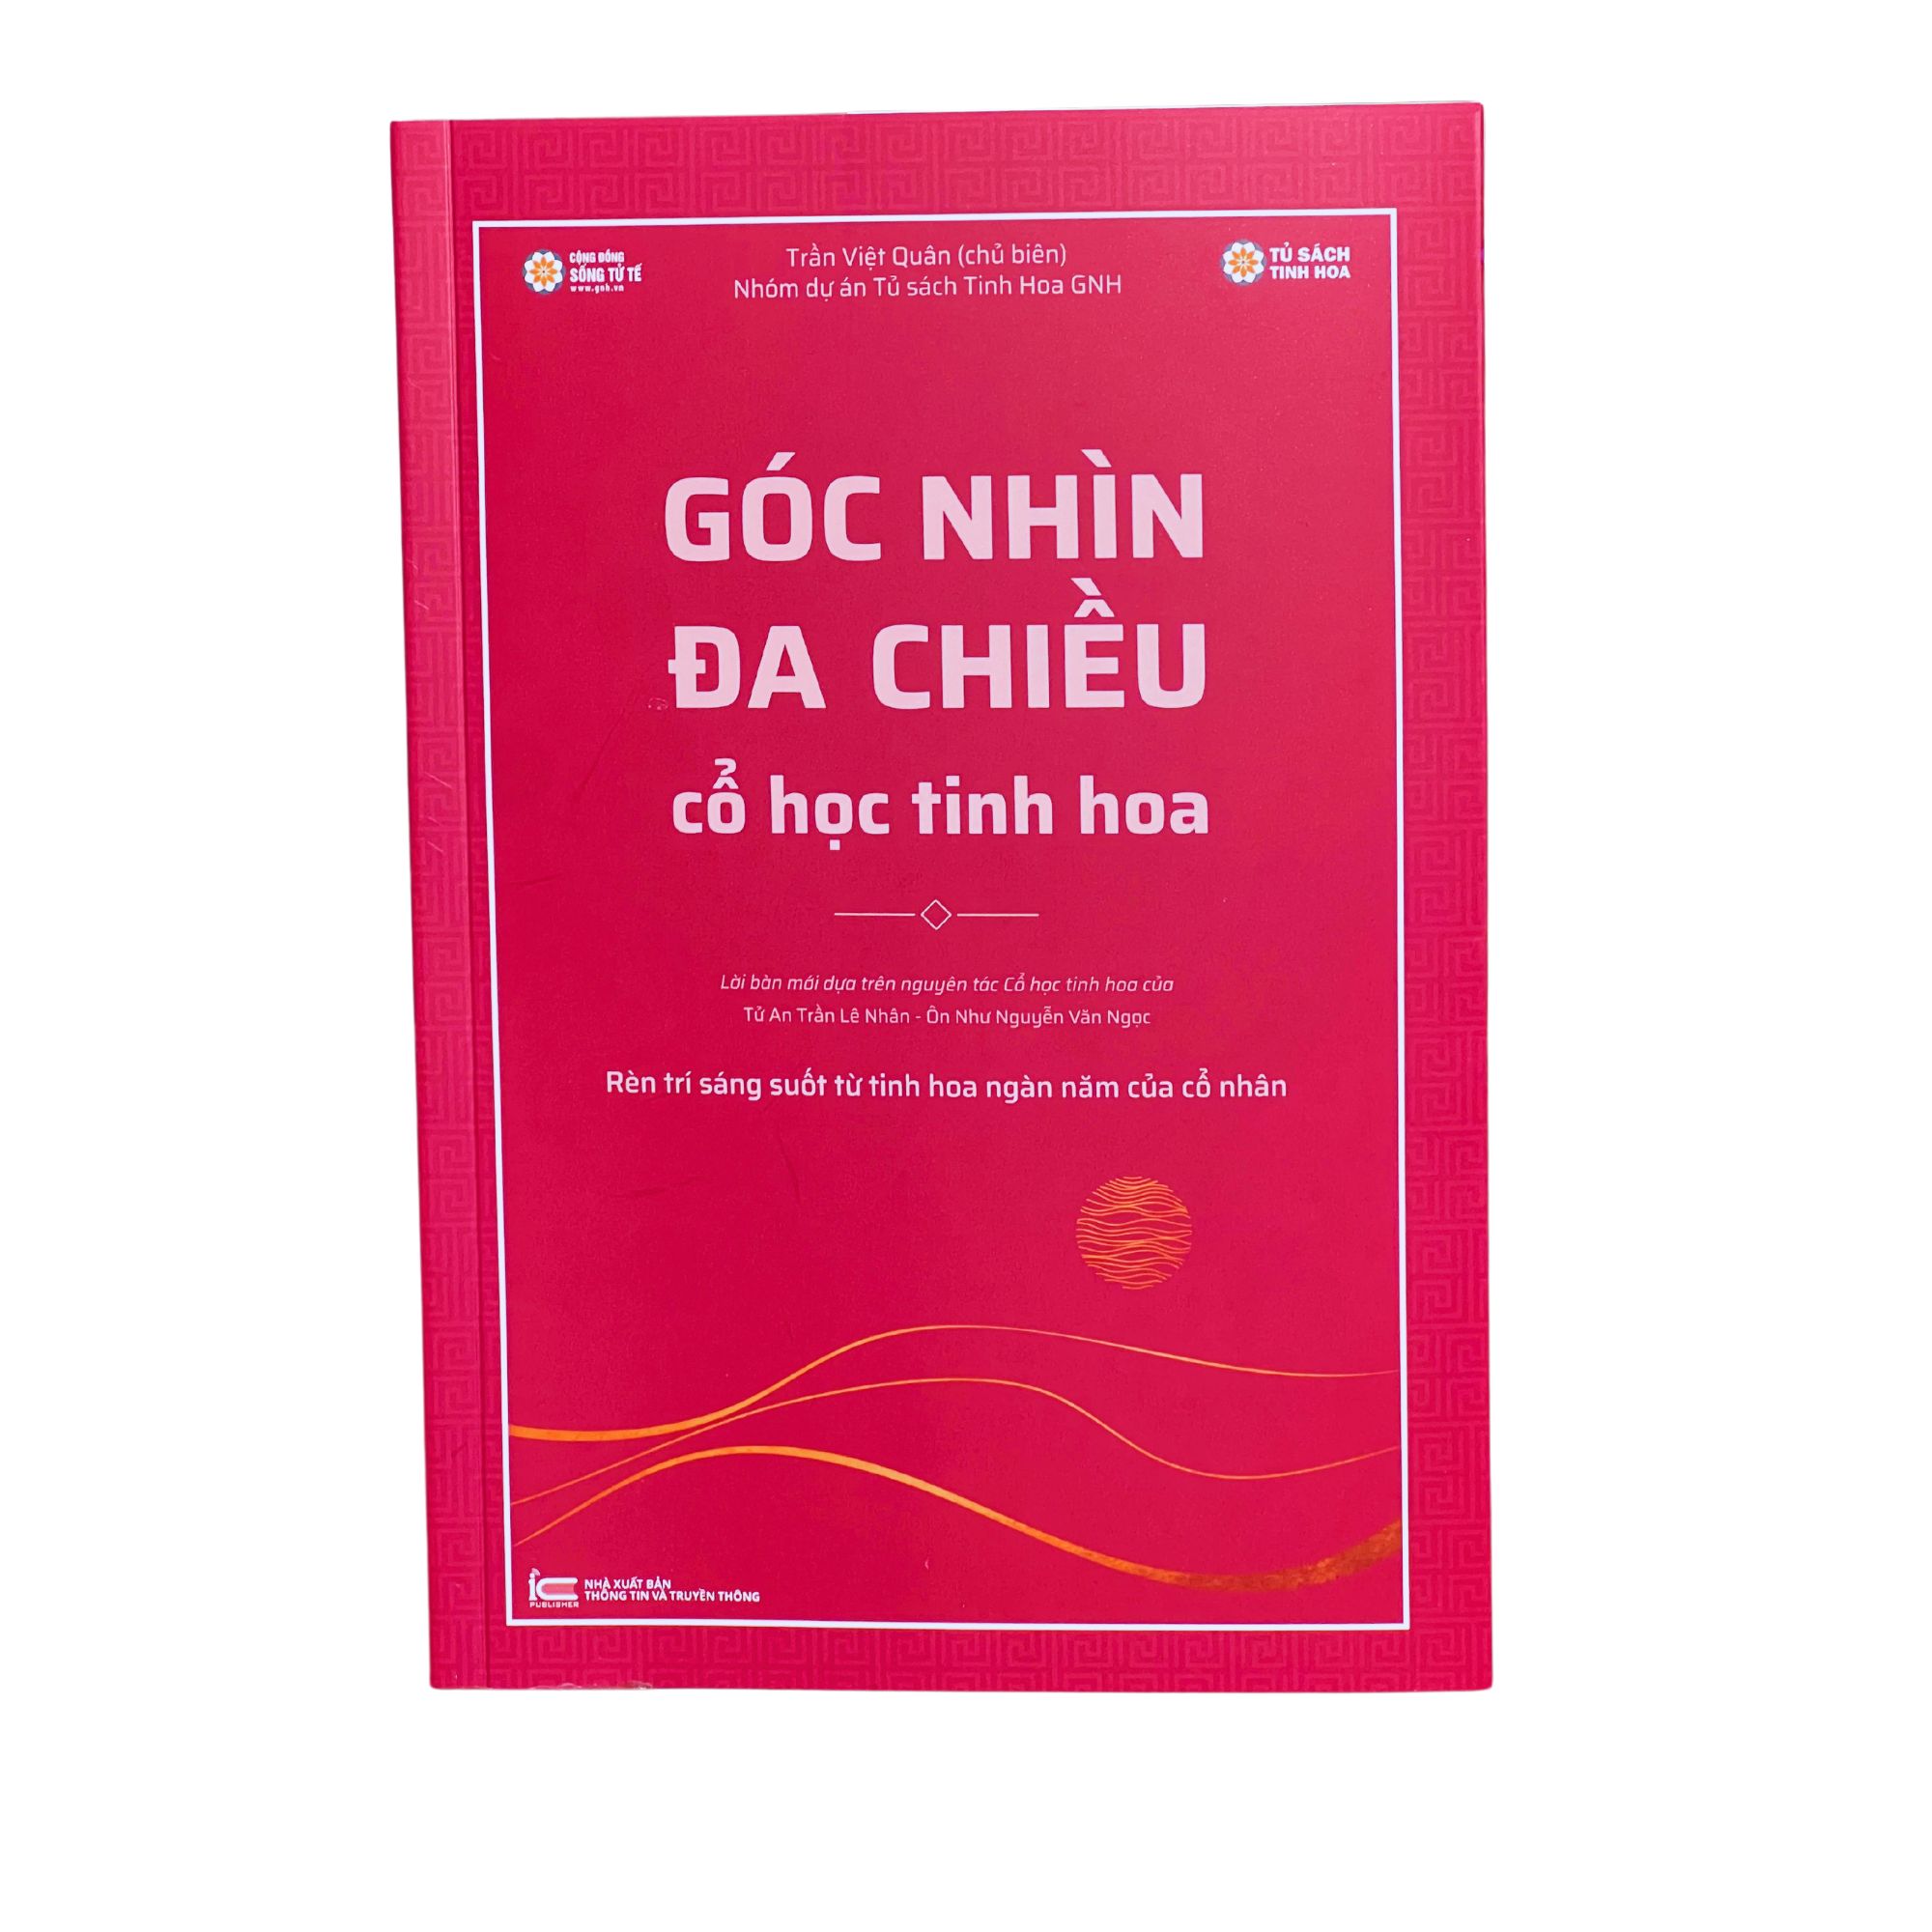 Sách - Việt Sử Kiêu Hùng + Góc Nhìn Đa Chiều - Cổ học tinh hoa (thầy Trần Việt Quân)